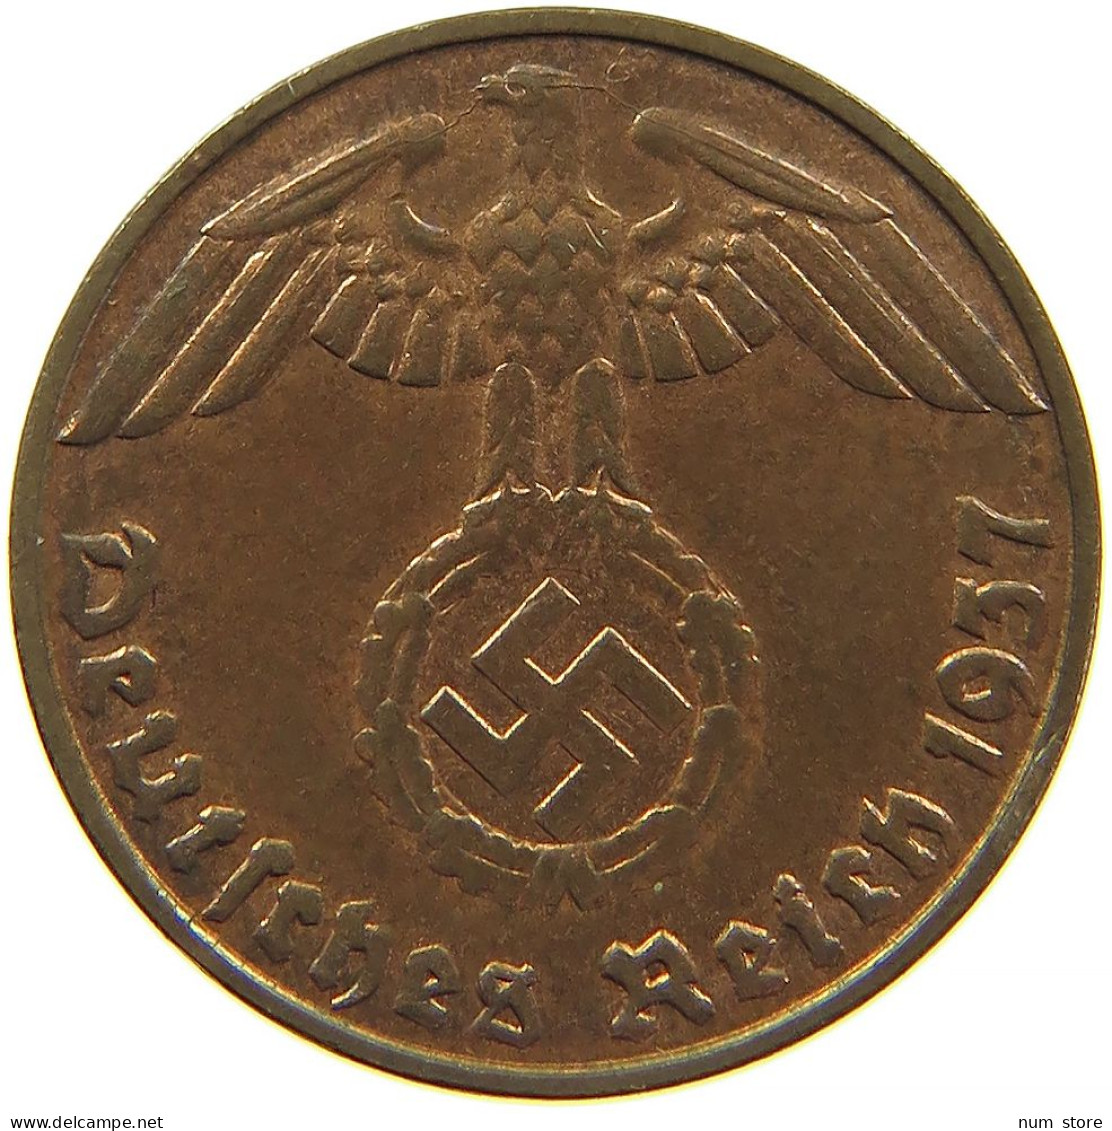 GERMANY 1 REICHSPFENNIG 1937 D #s083 0729 - 1 Reichspfennig